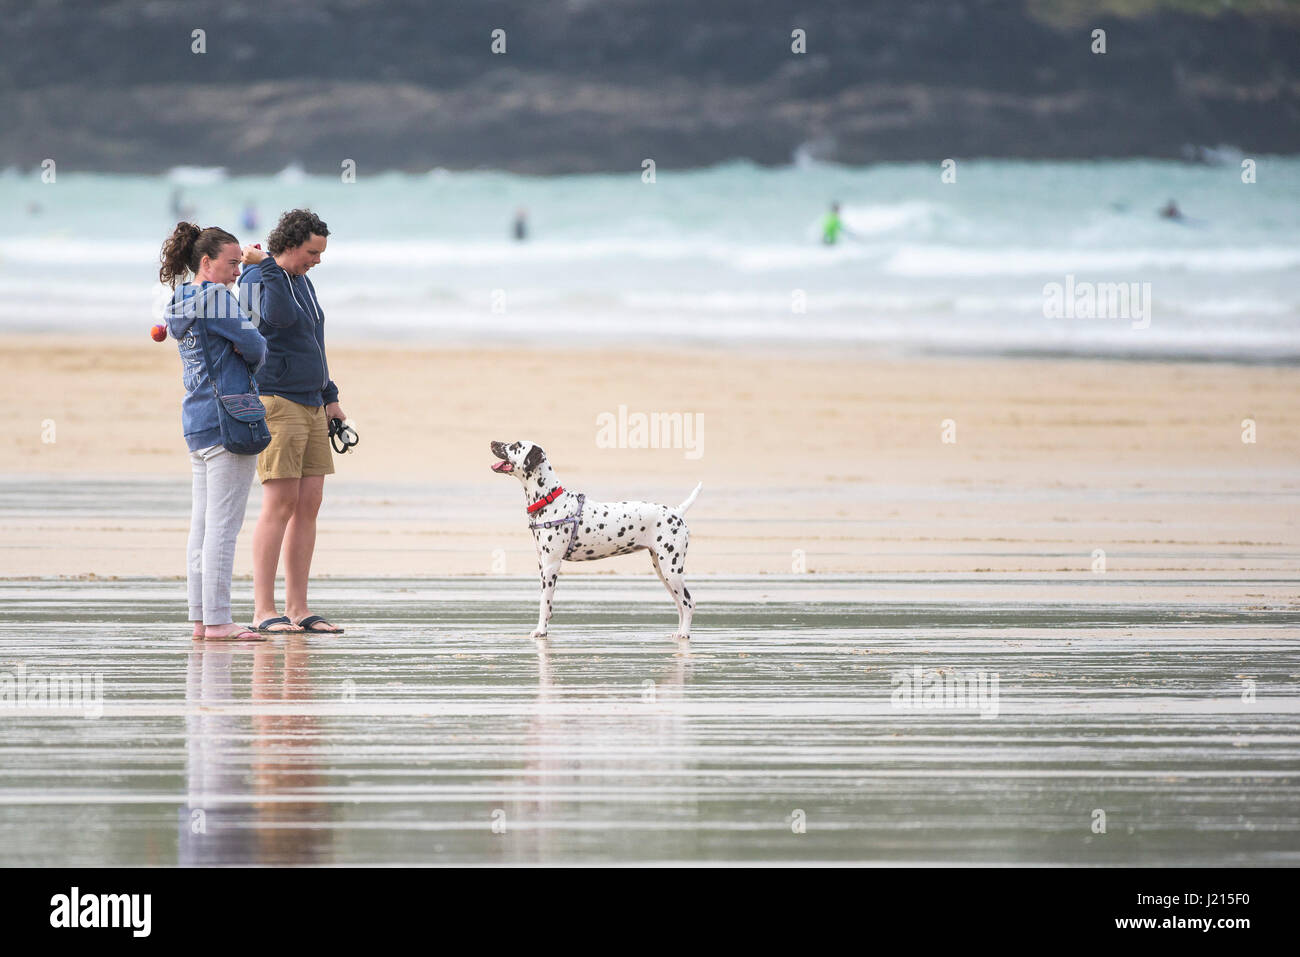 La gente jugando con un perro; los propietarios; Dálmata; PET; Plaful; Juegos; actividades recreativas; Fistral Beach, Newquay, Cornwall; Mans mejor amigo Foto de stock